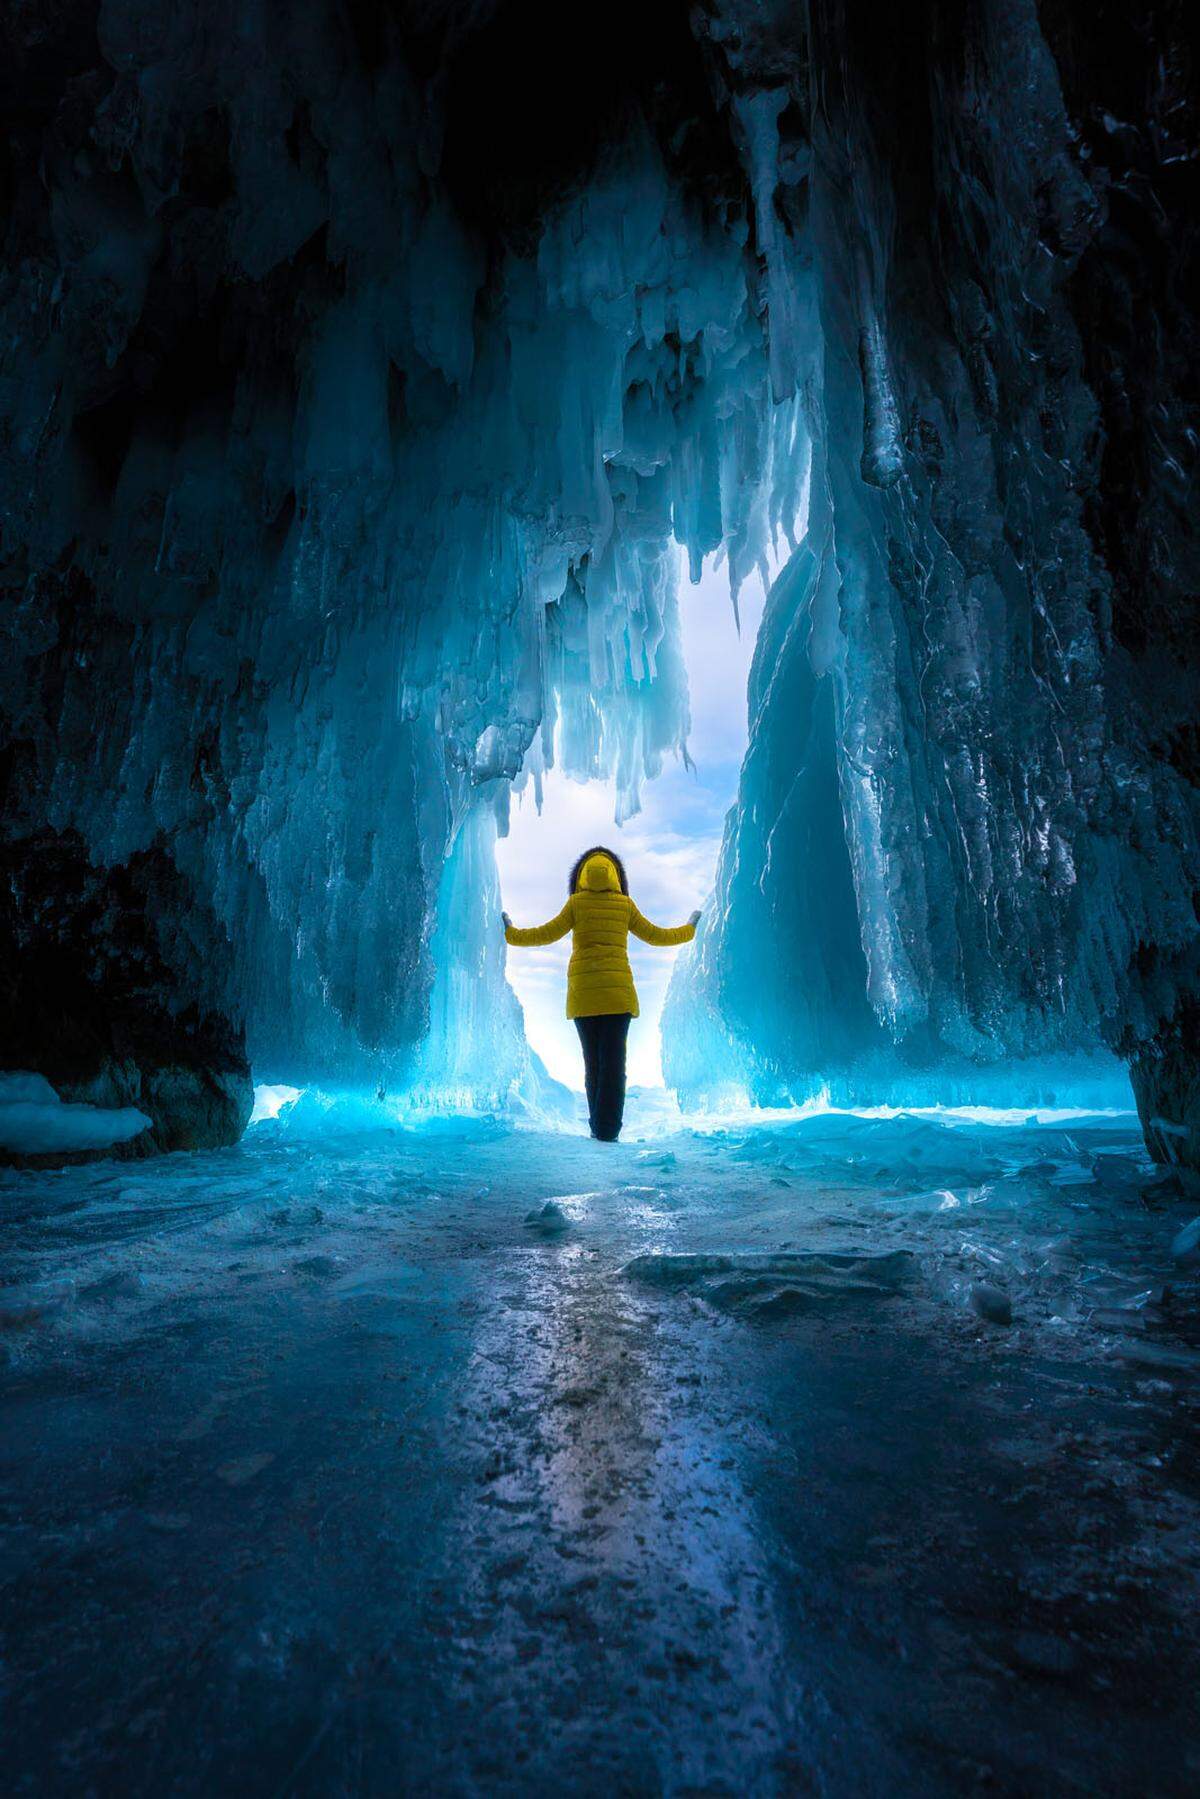 Dieses Foto entstand in Russland. "Man kann diese Höhlen im Sommer nicht erreichen." Auch nicht mit dem Boot. Die einzige Möglichkeit ist, auf den Winter zu warten und über das gefrorene Eis hineinzuwandern", schreibt ein Teilnehmer über ein Abenteuer, das ihm wohl noch lange im Gedächtnis bleibt.